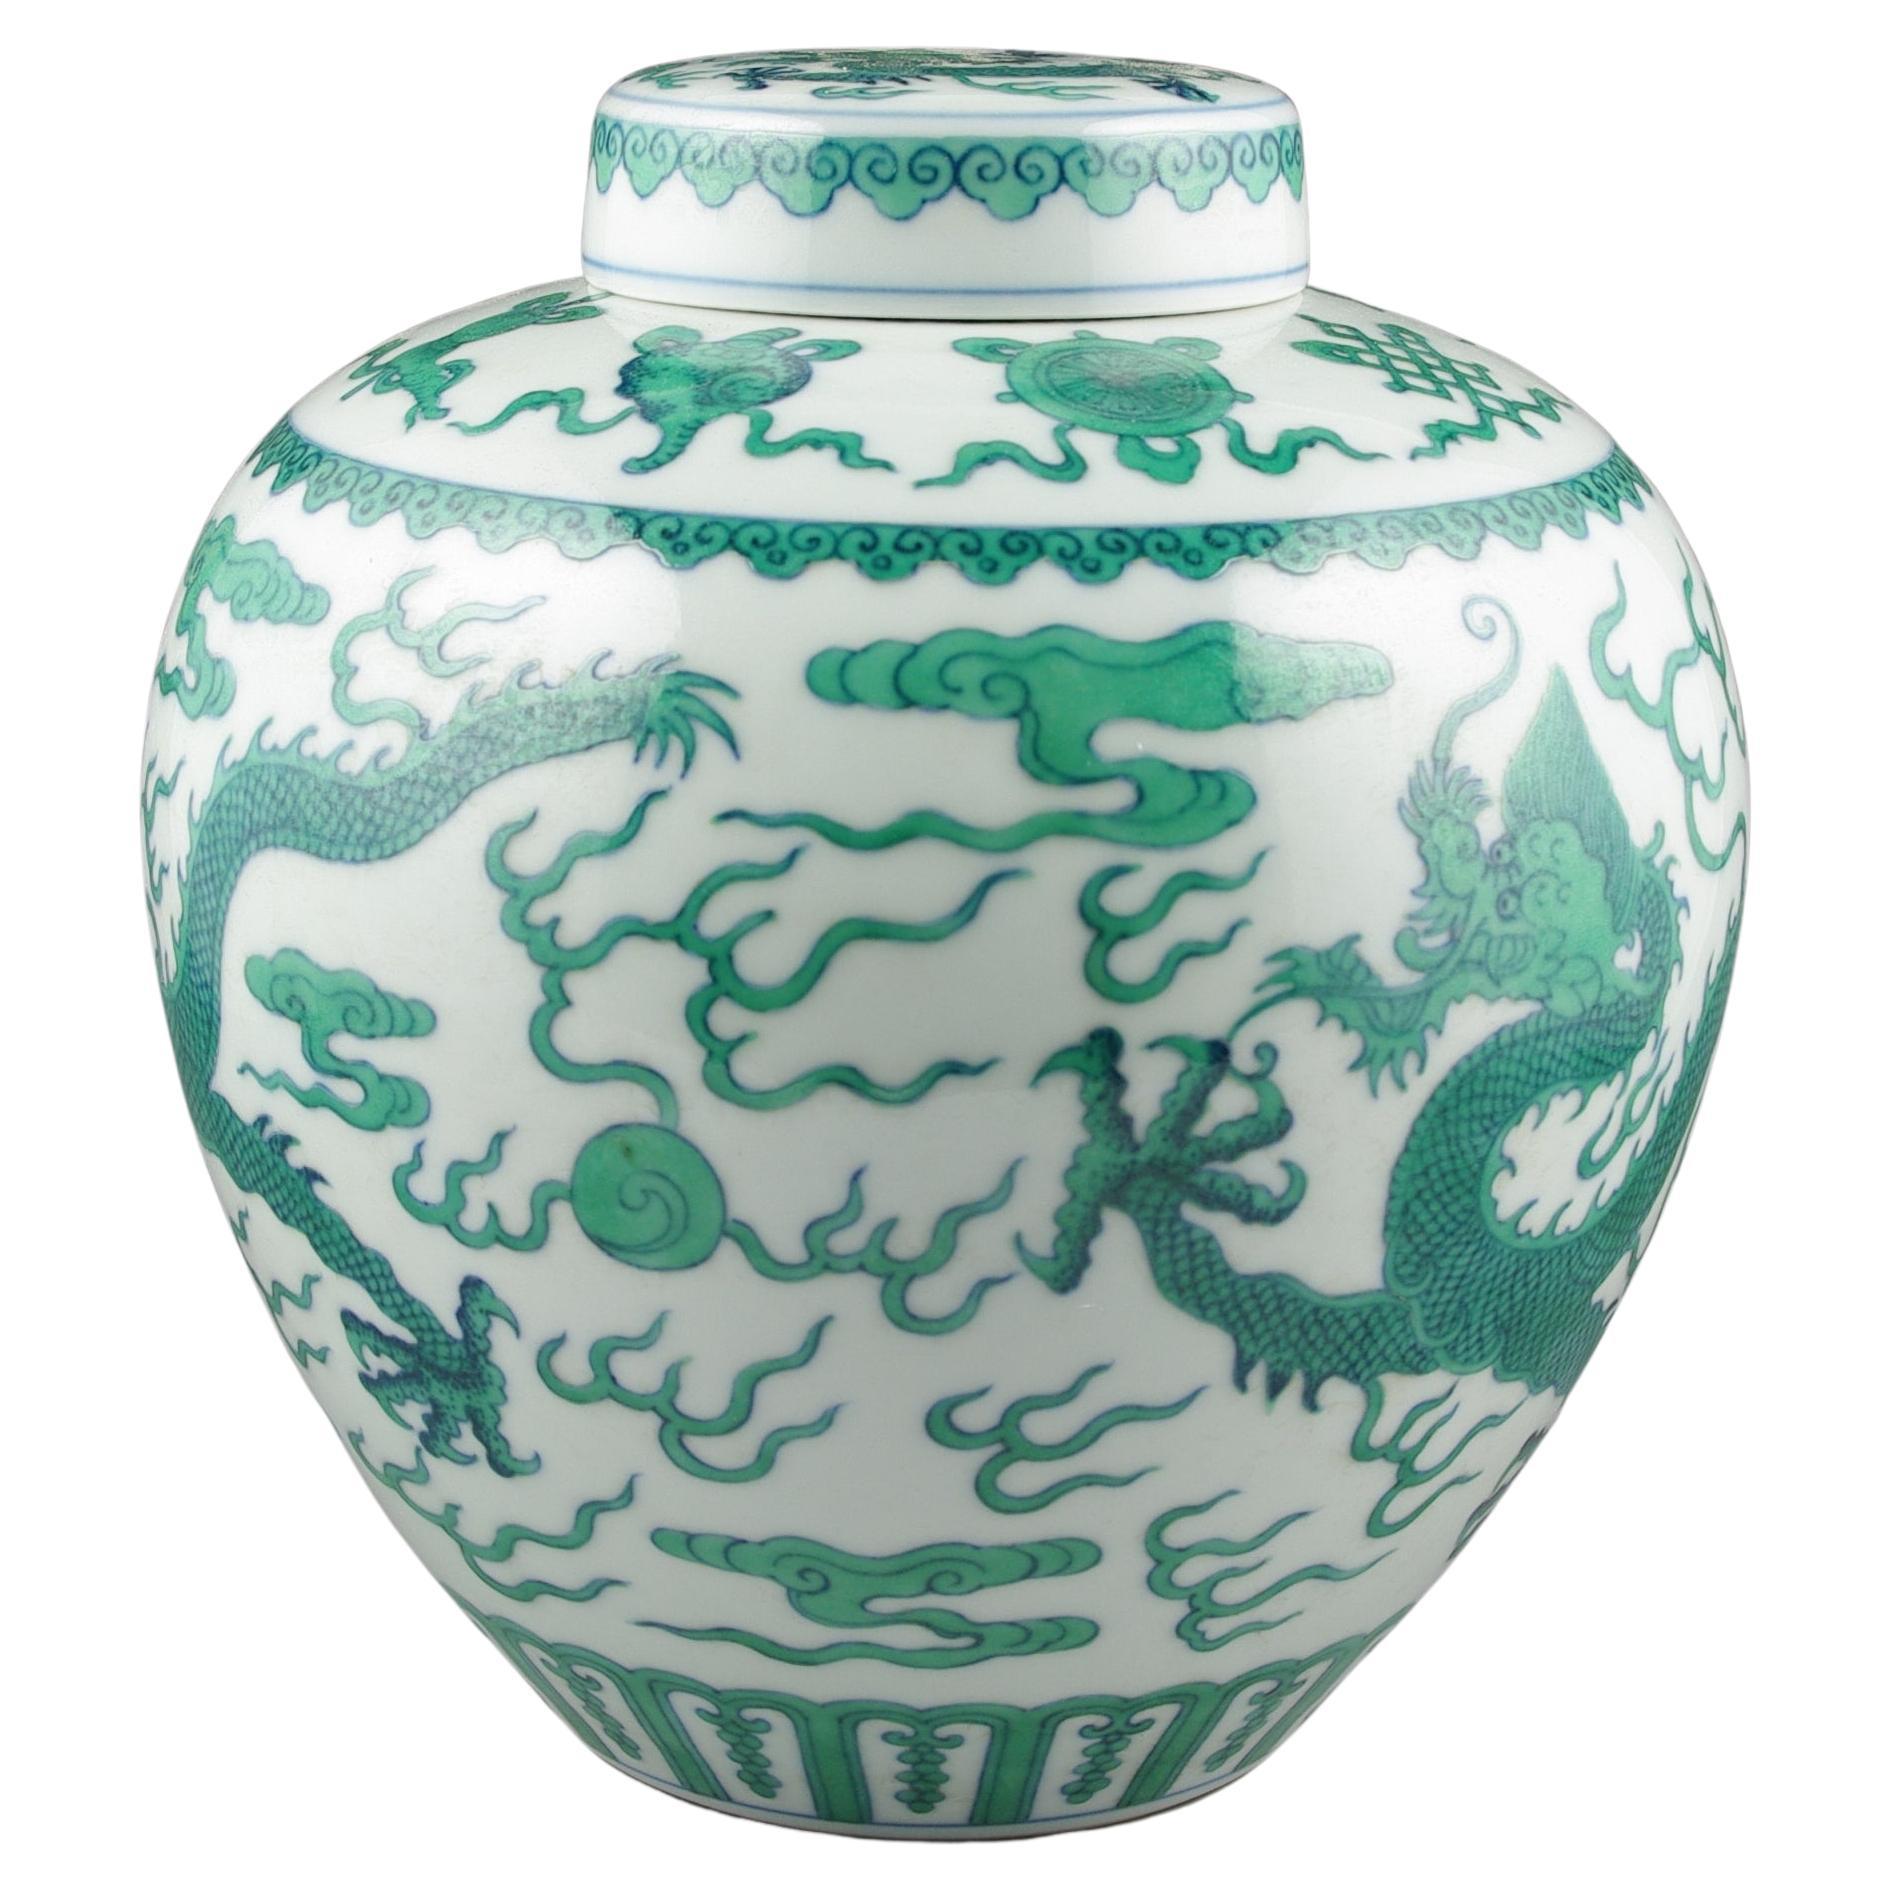 Nous sommes ravis de présenter cet exquis pot à gingembre couvert en porcelaine chinoise, une pièce qui incarne le summum de l'artisanat et de l'excellence artistique. La jarre captive l'observateur par sa représentation vibrante d'un dragon